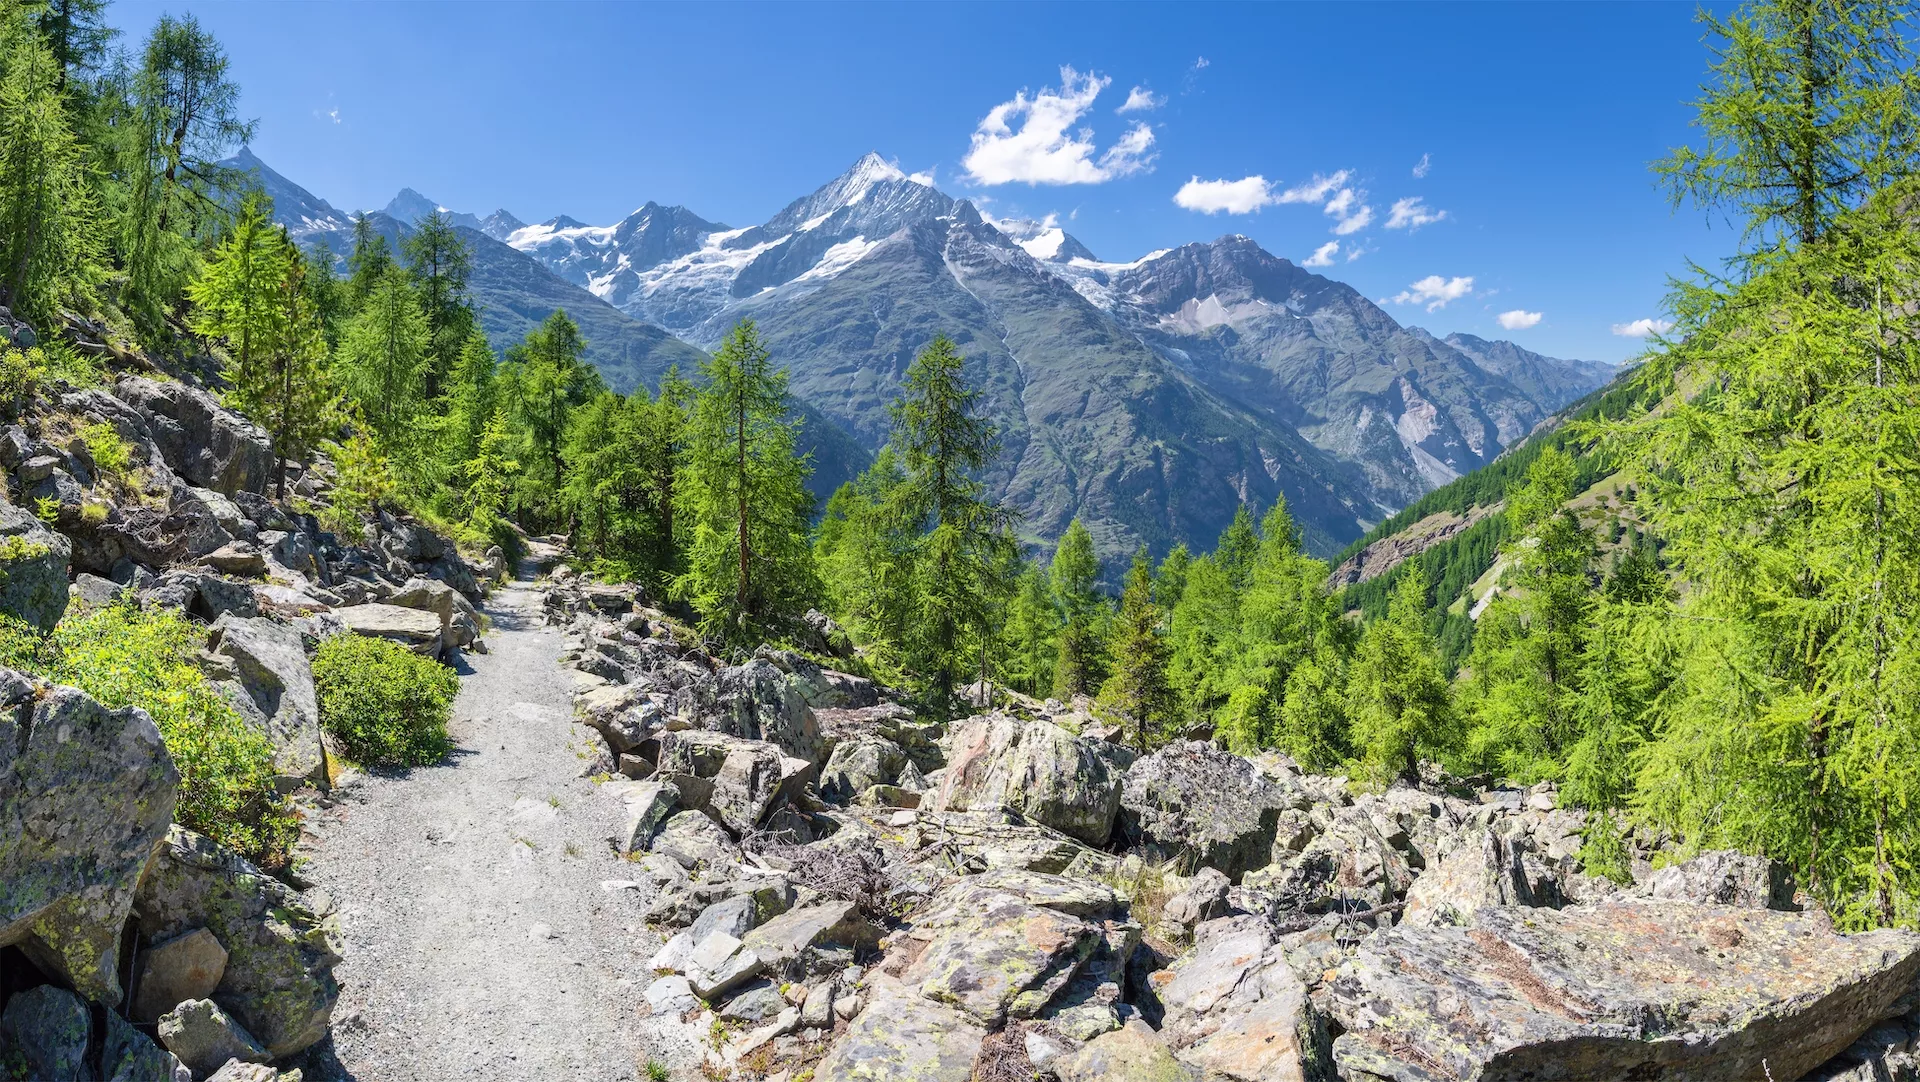 Les sommets des Alpes de Walliser, le Bishorn, le Weisshorn, le Schalihorn et le Rothorn, au-dessus de la vallée du Mattertal.